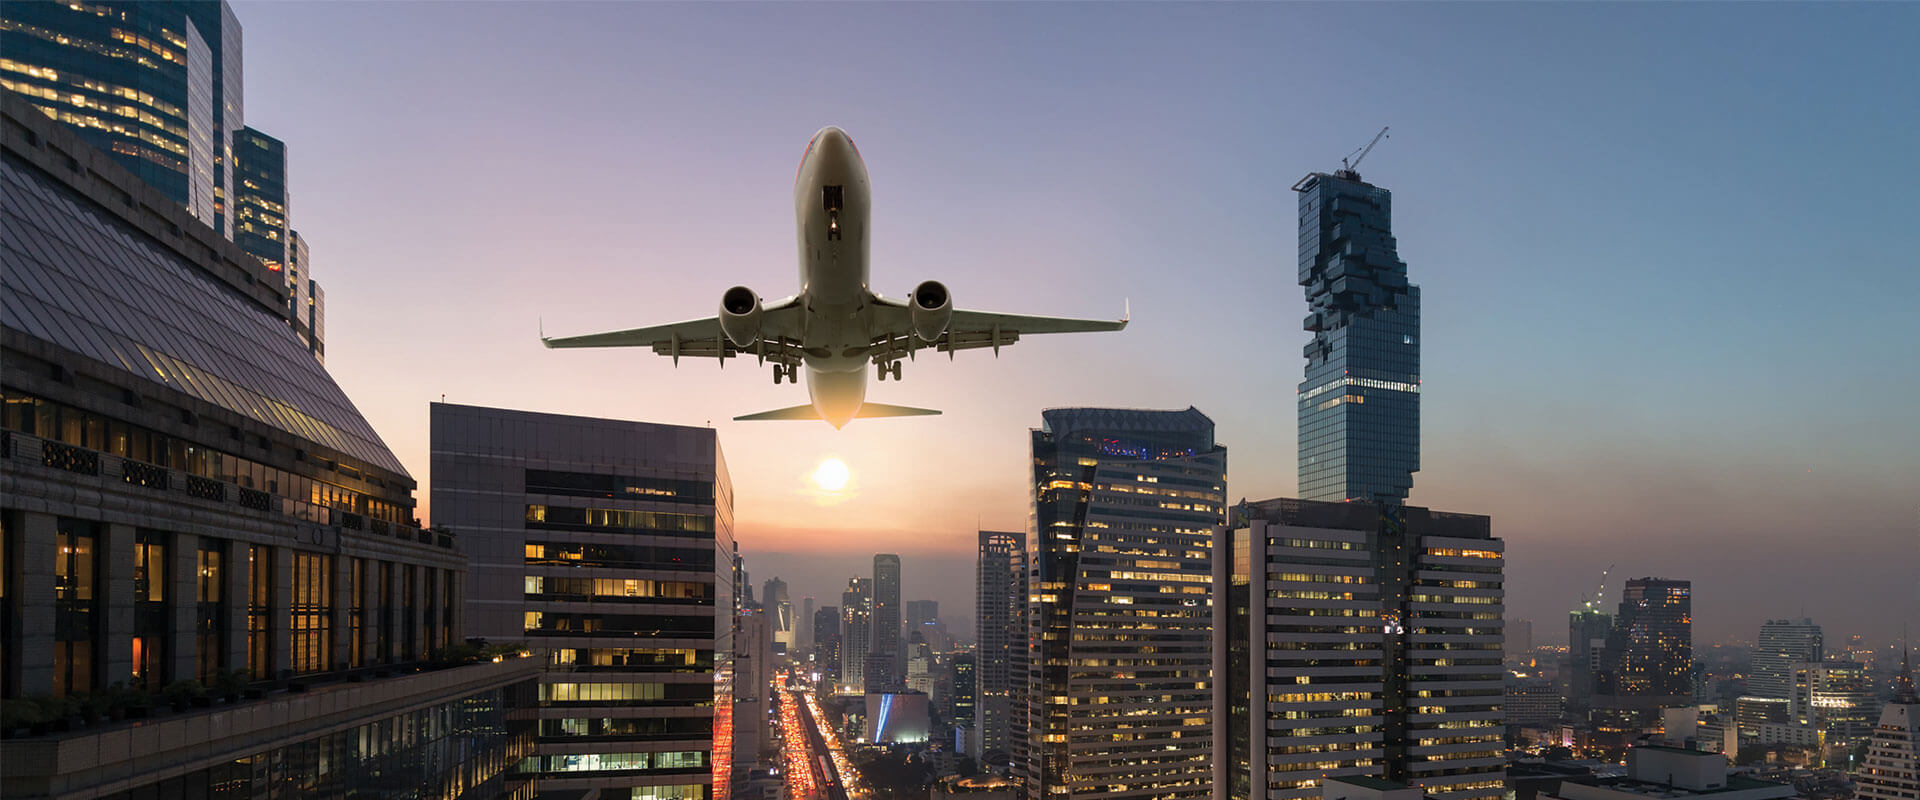 Mühendisliğin Değeri: Güvenli Hizmete Dönüş İçin Havayollarını Destekliyoruz